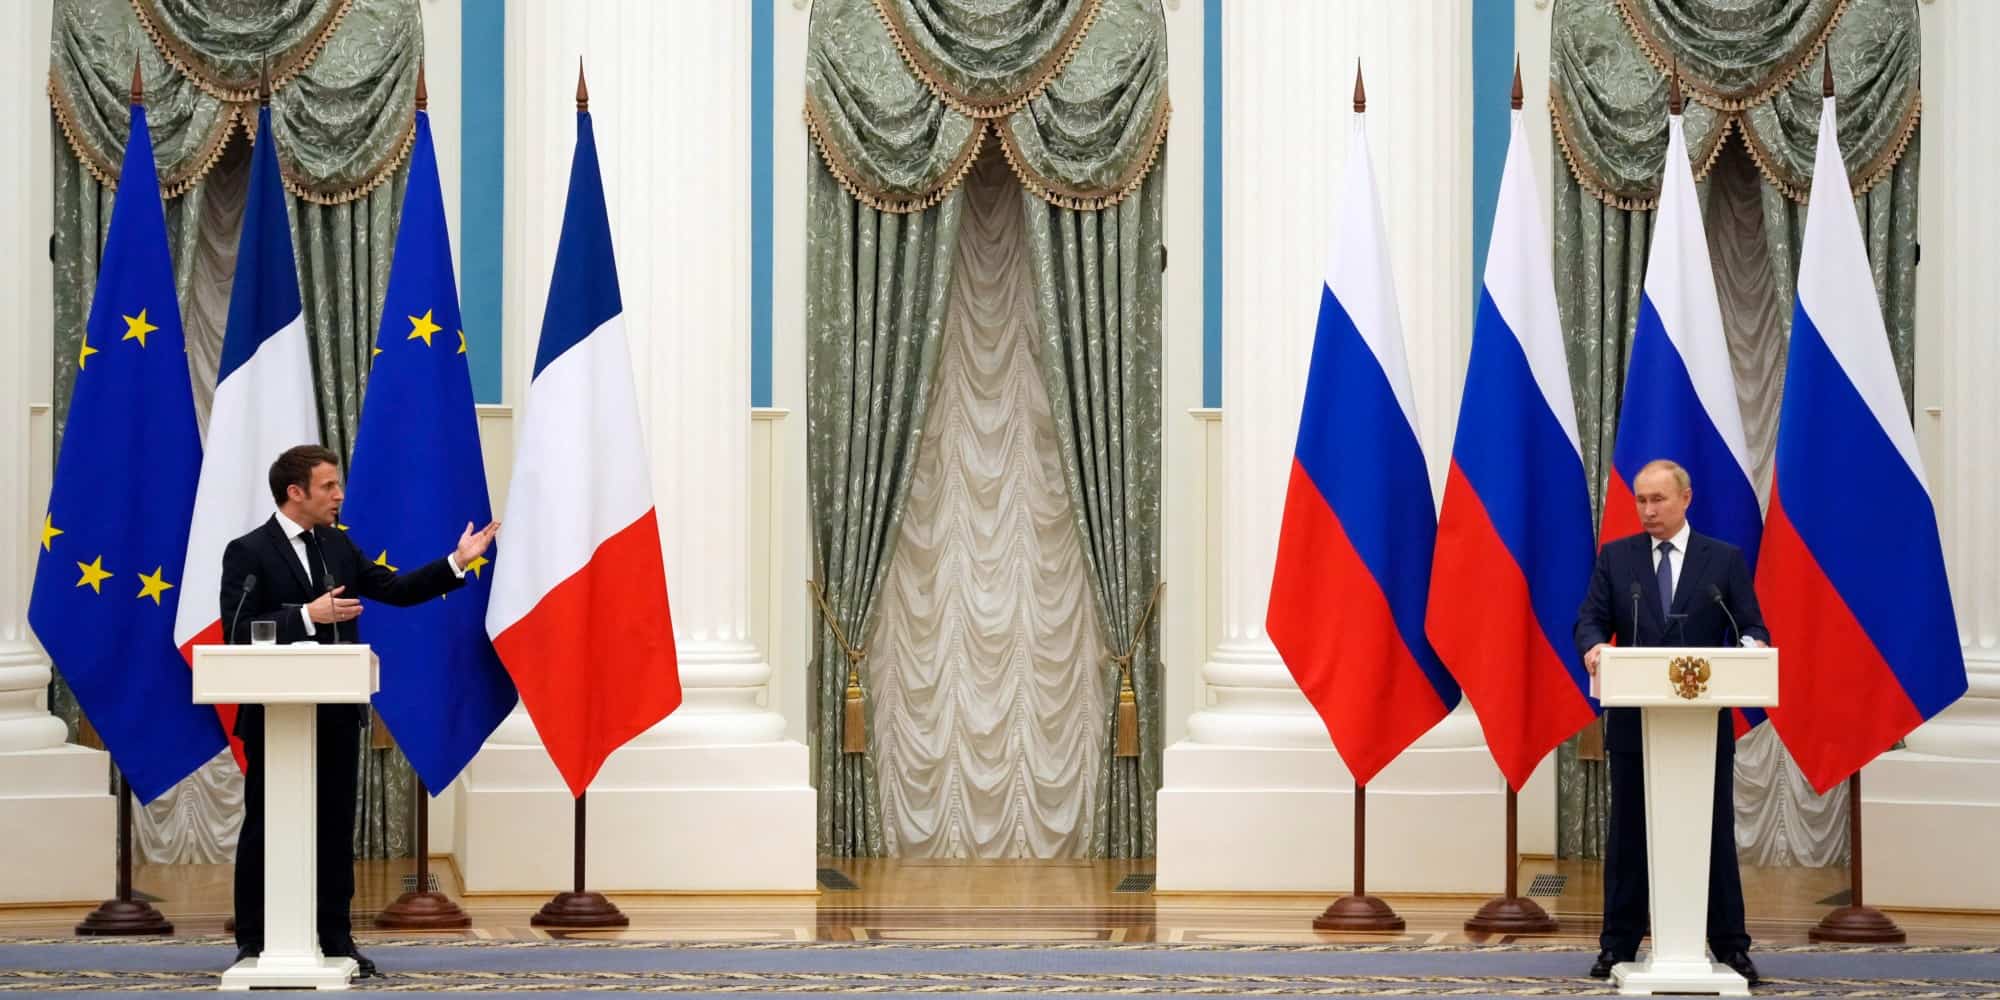 Ο Γάλλος πρόεδρος, Εμανουέλ Μακρόν και ο Ρώσος πρόεδρος, Βλαντίμιρ Πούτιν